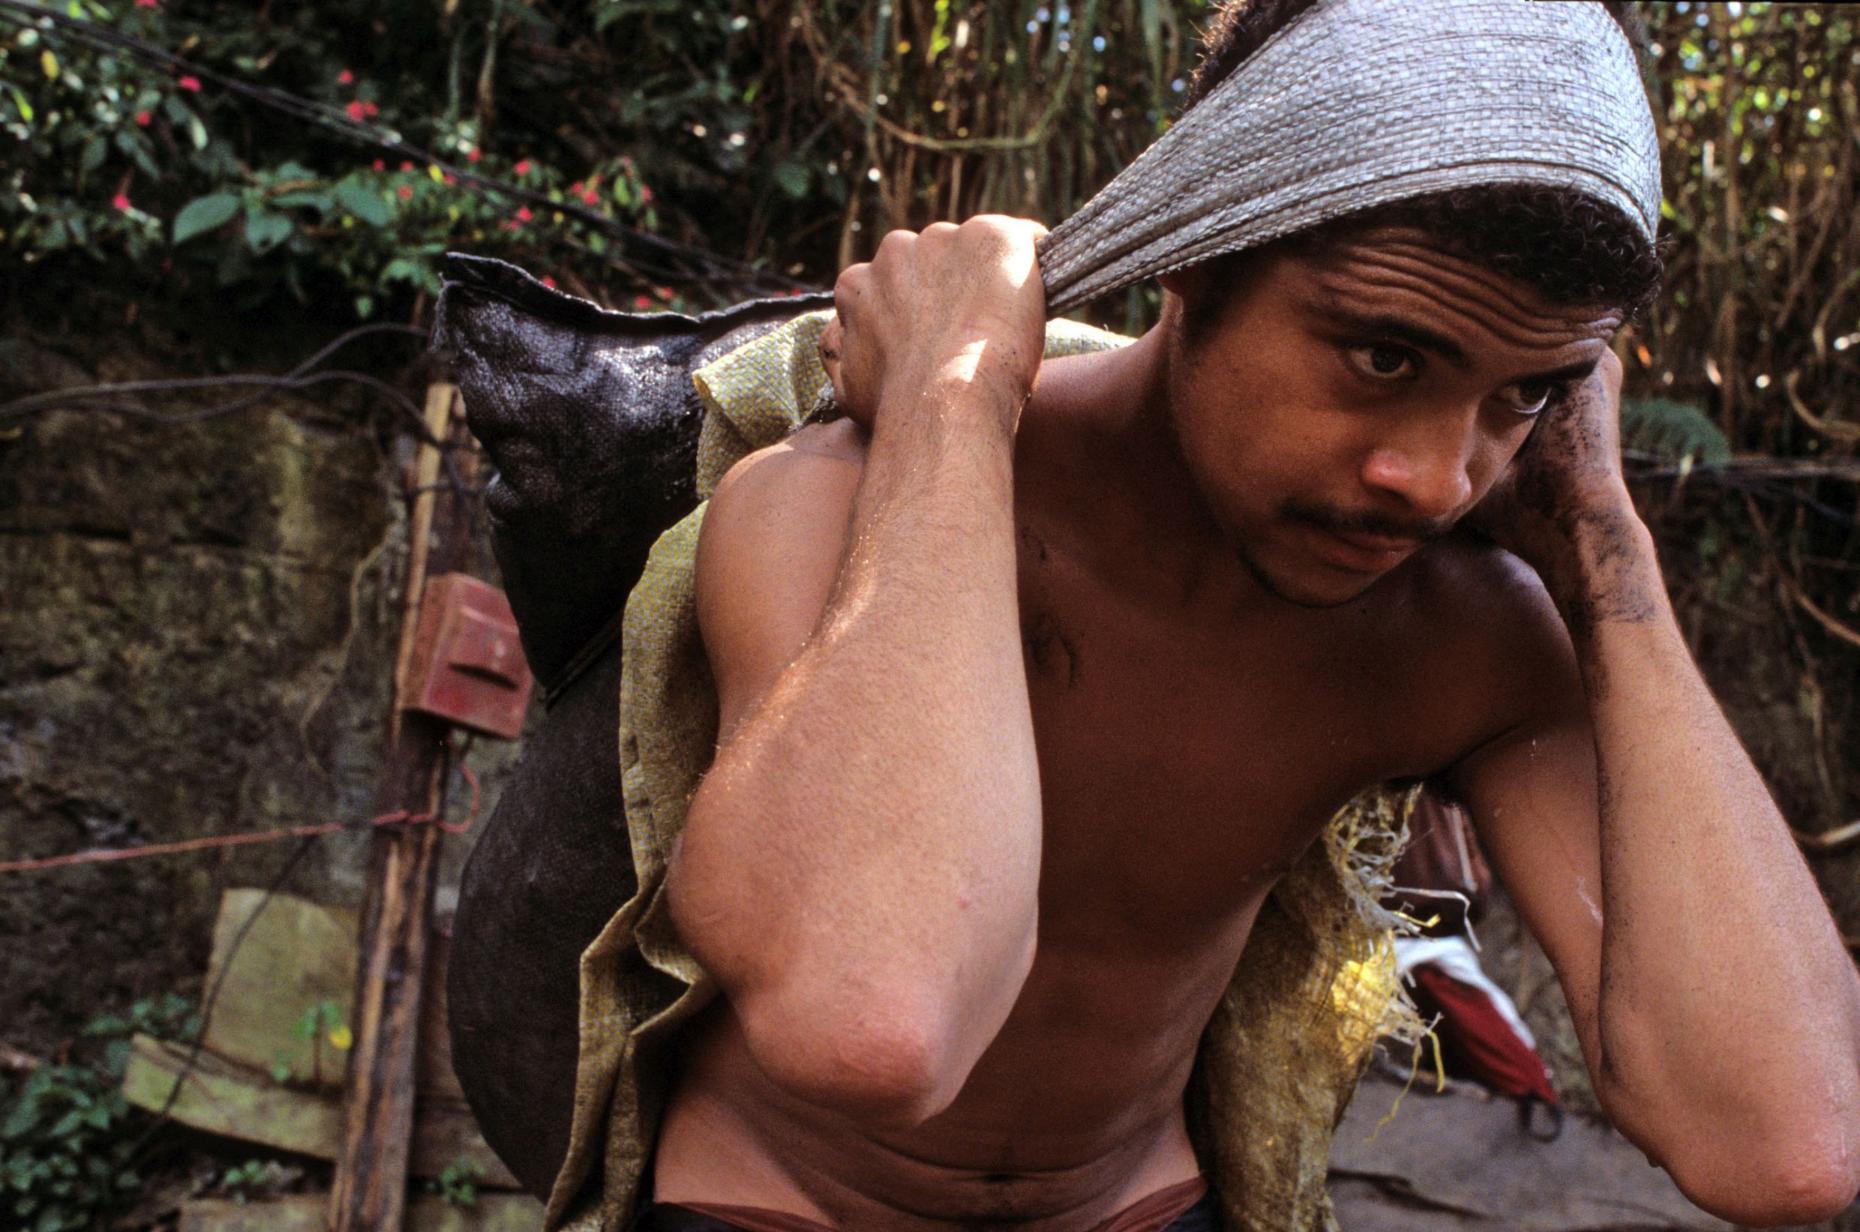 Minenarbeiter in Kolumbien (Symbolbild) (c) Adveniat